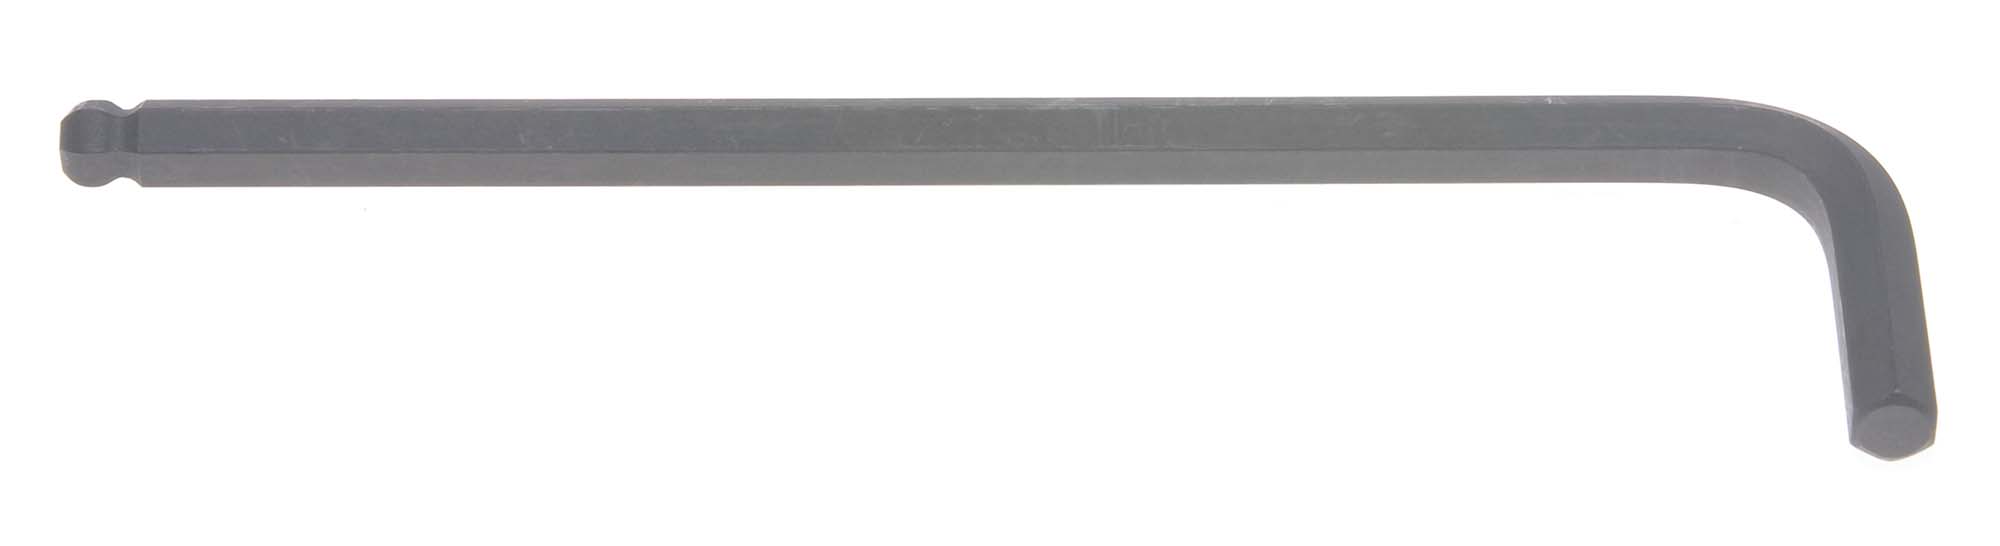 Bondhus 10970 7mm Balldriver L-Wrench Hex Key